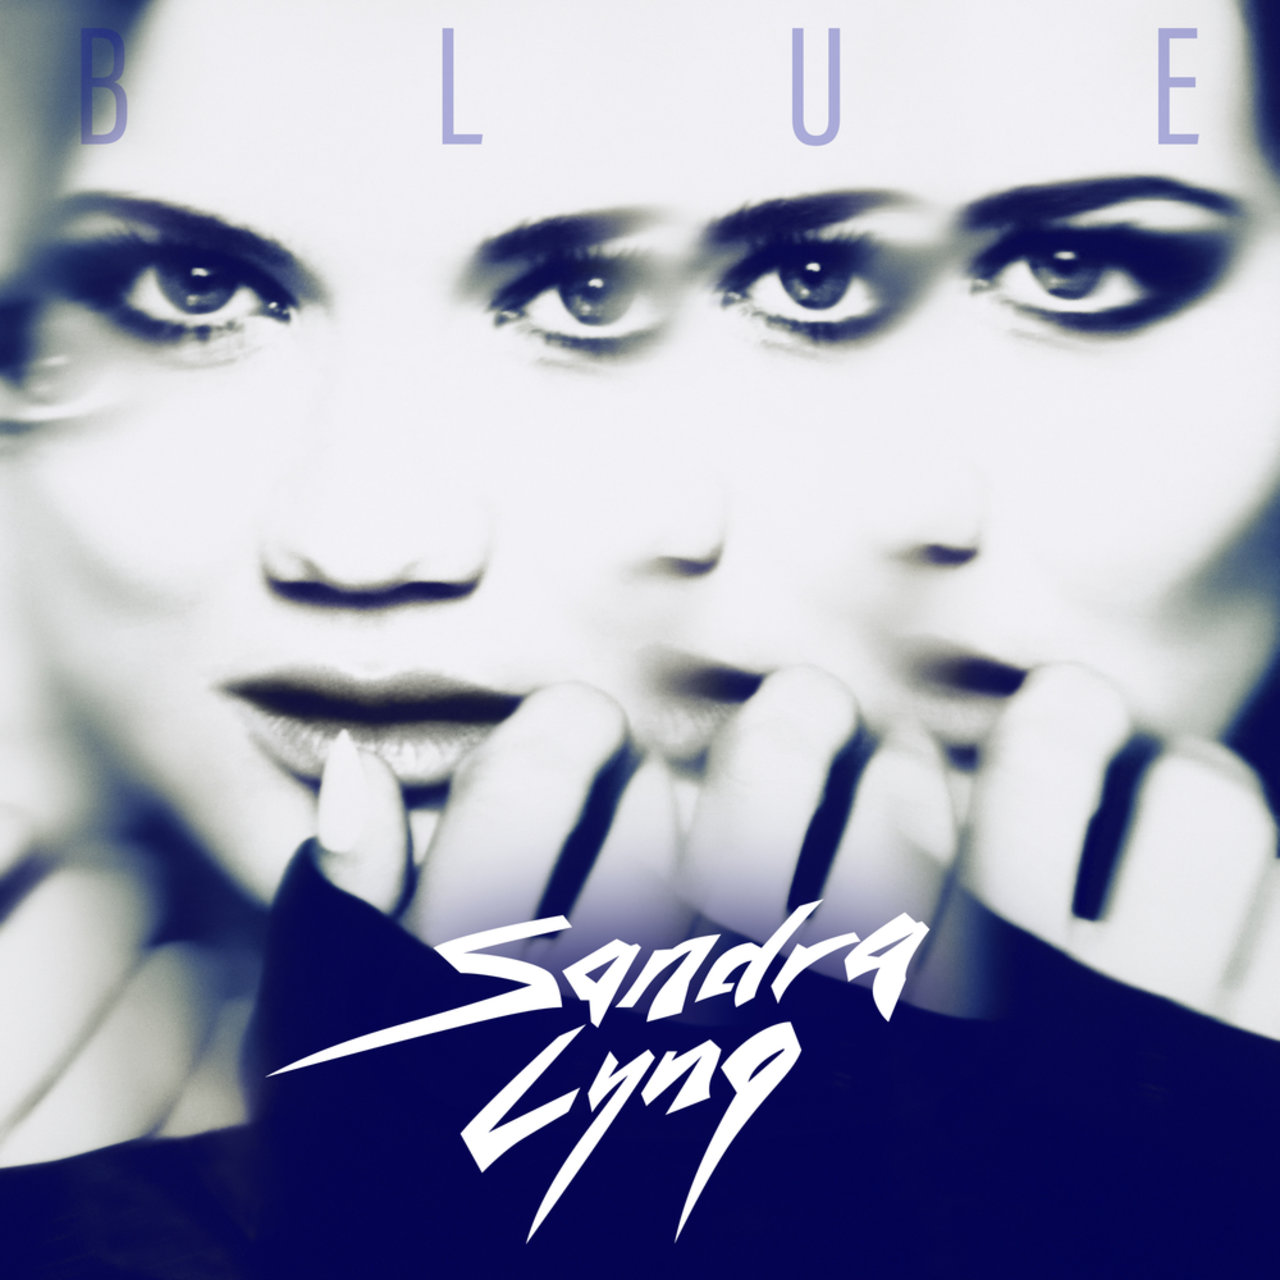 Sandra Lyng Blue cover artwork